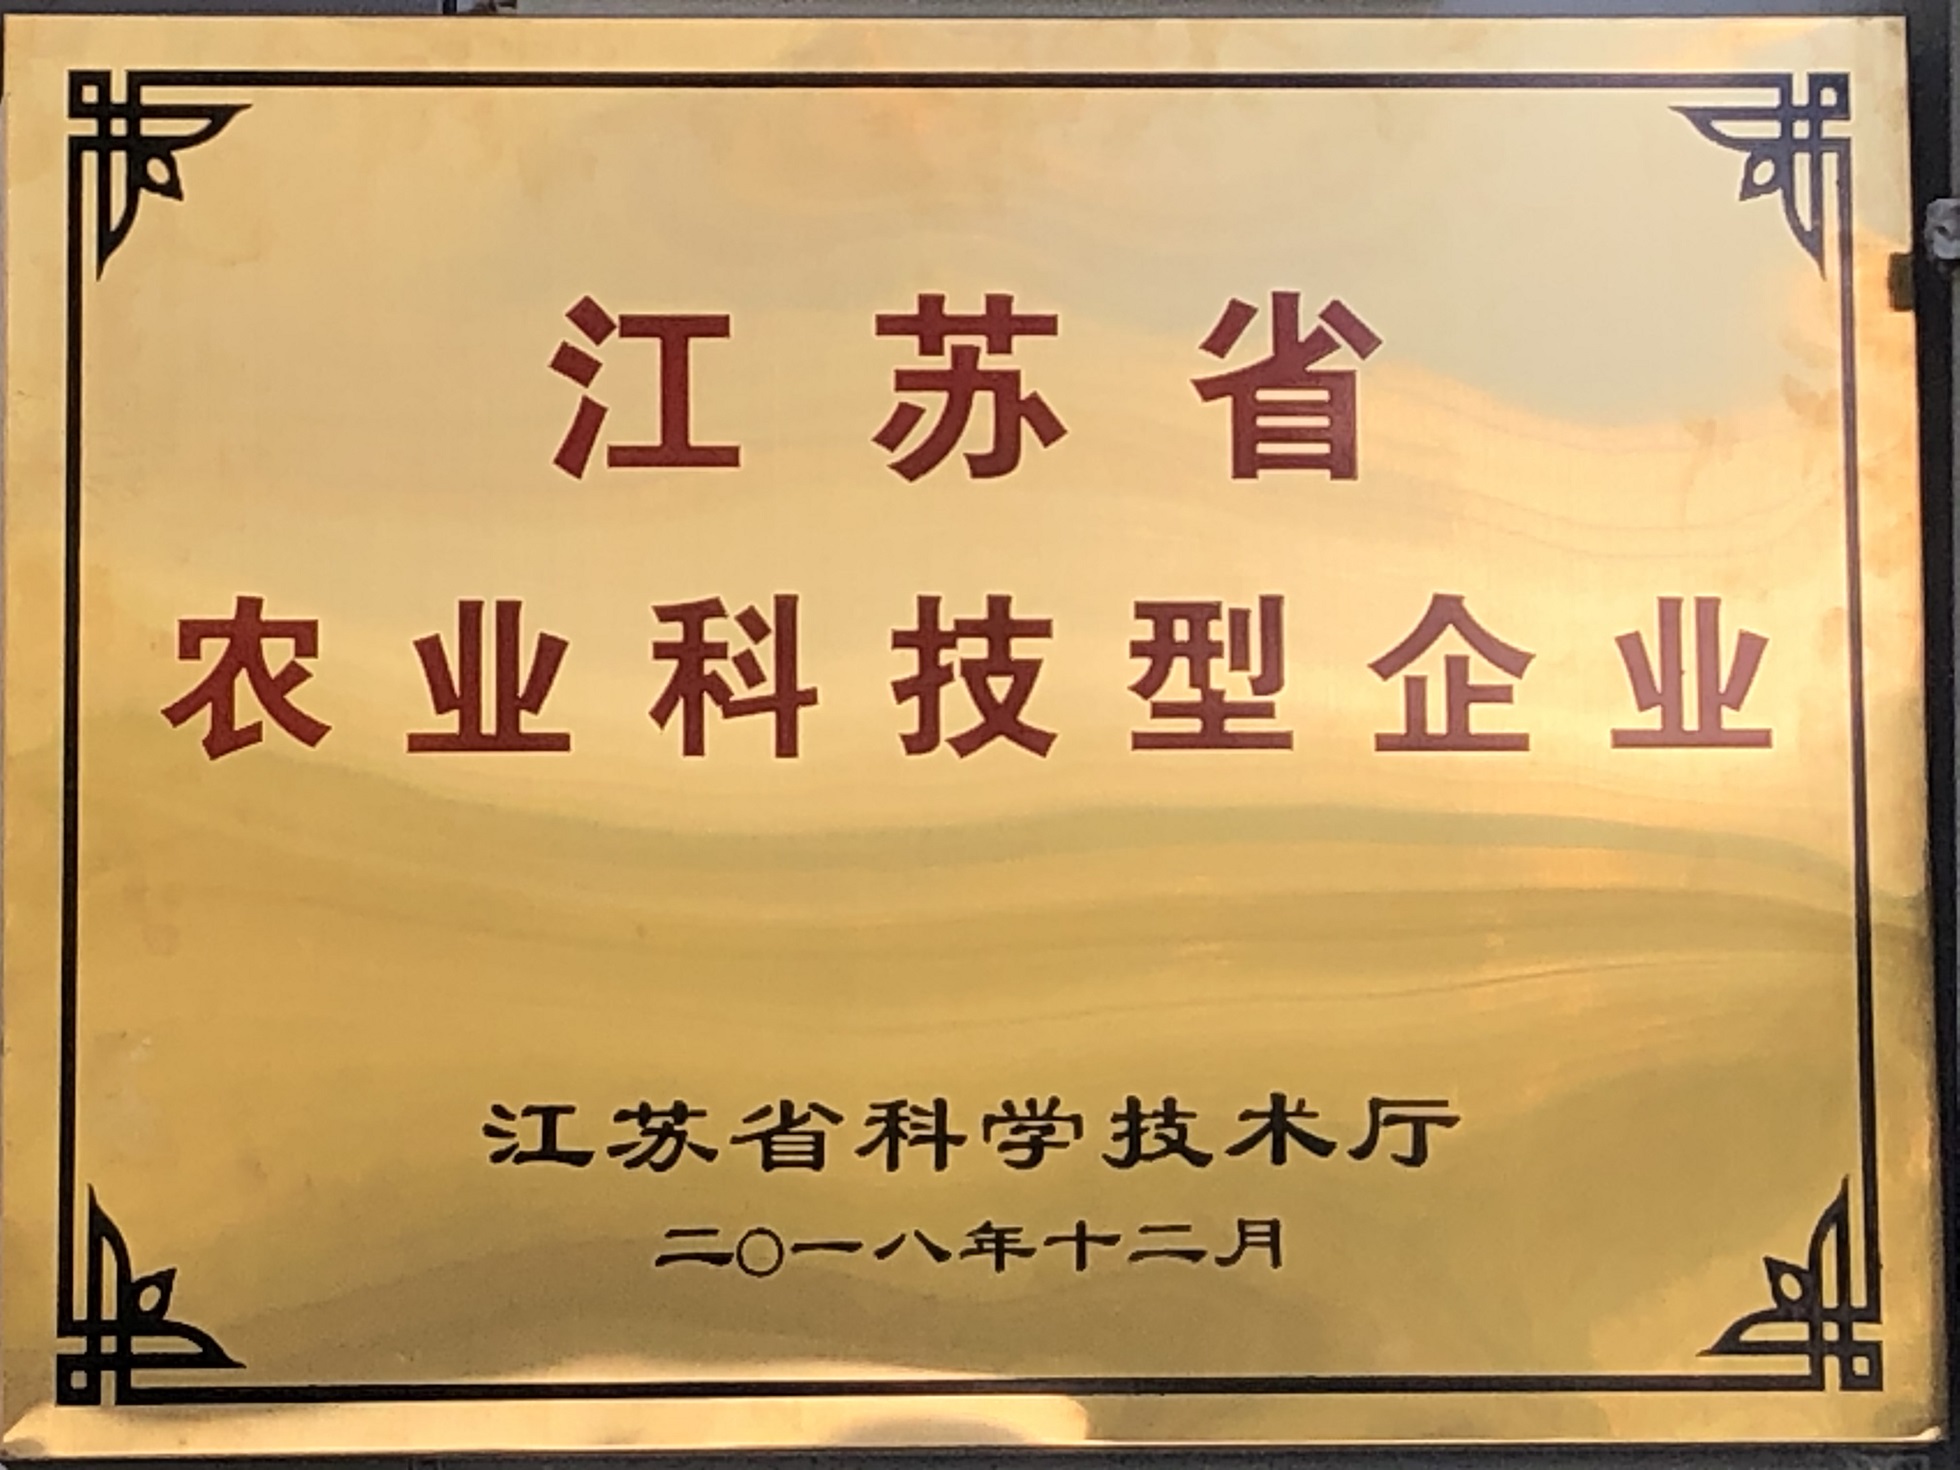 ◆江苏省农业科技型企业